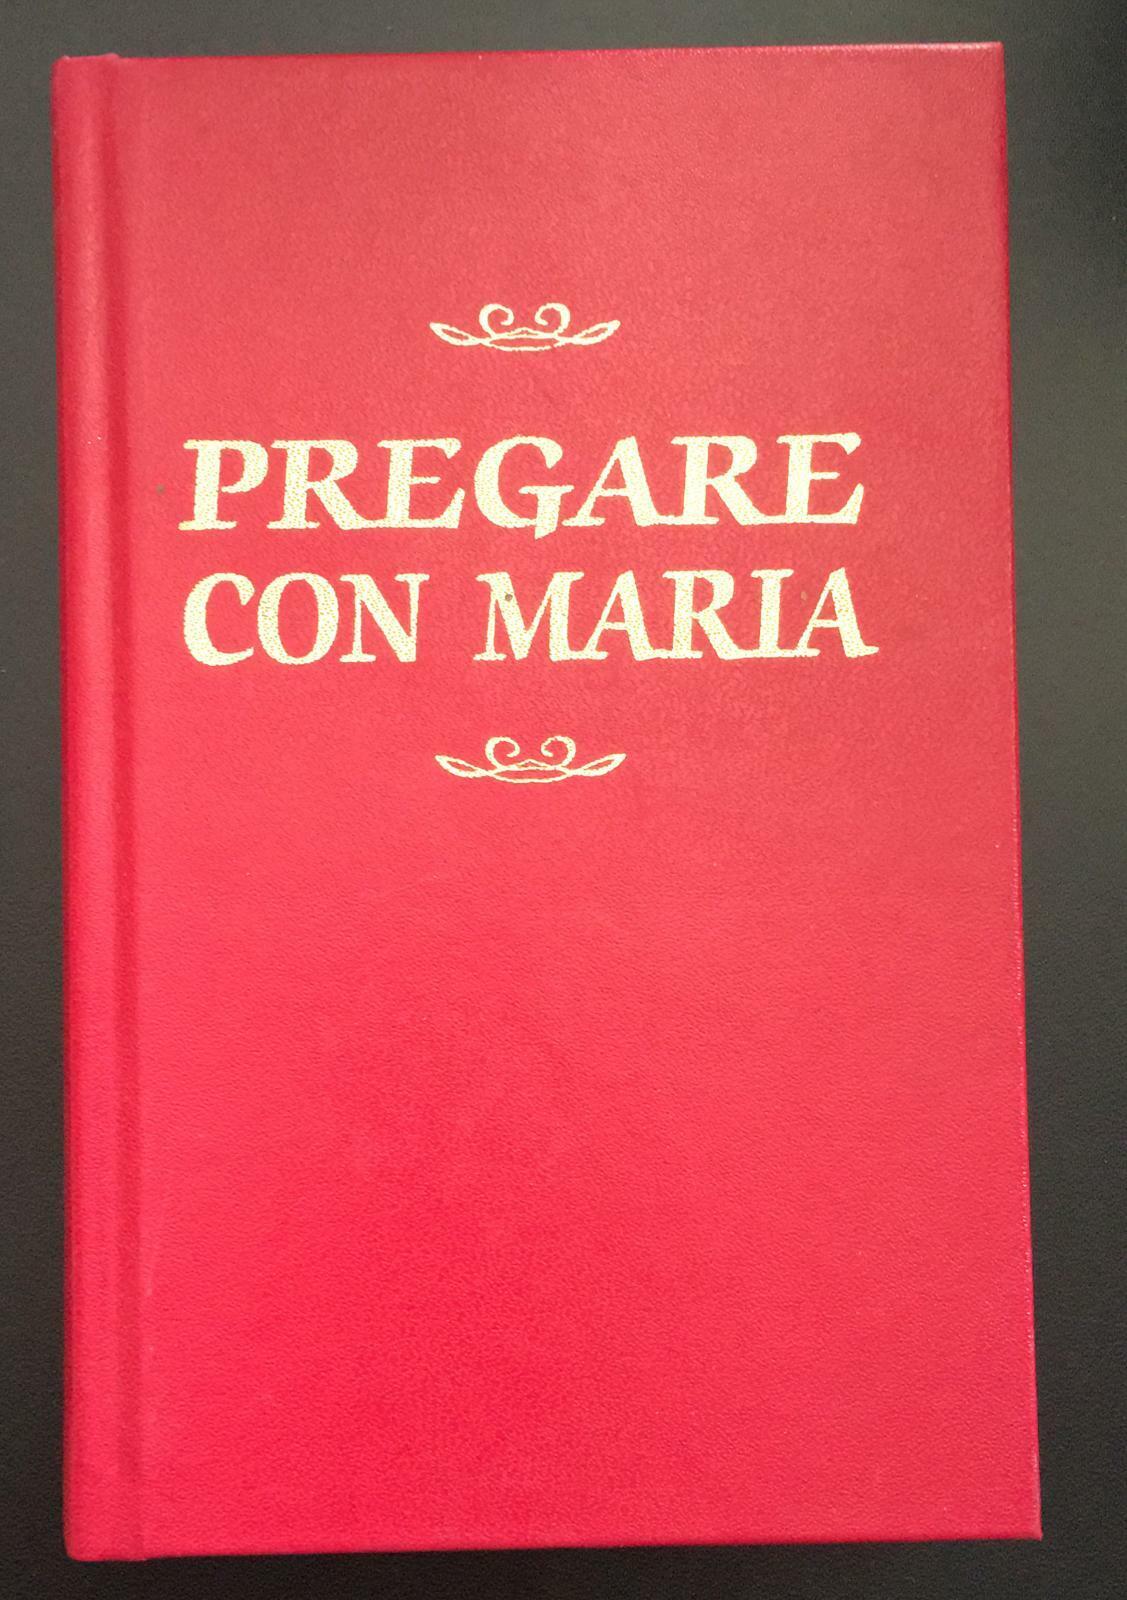 Pregare con Maria - Autori Vari,  2003,  Edizioni Messaggero Padova - P